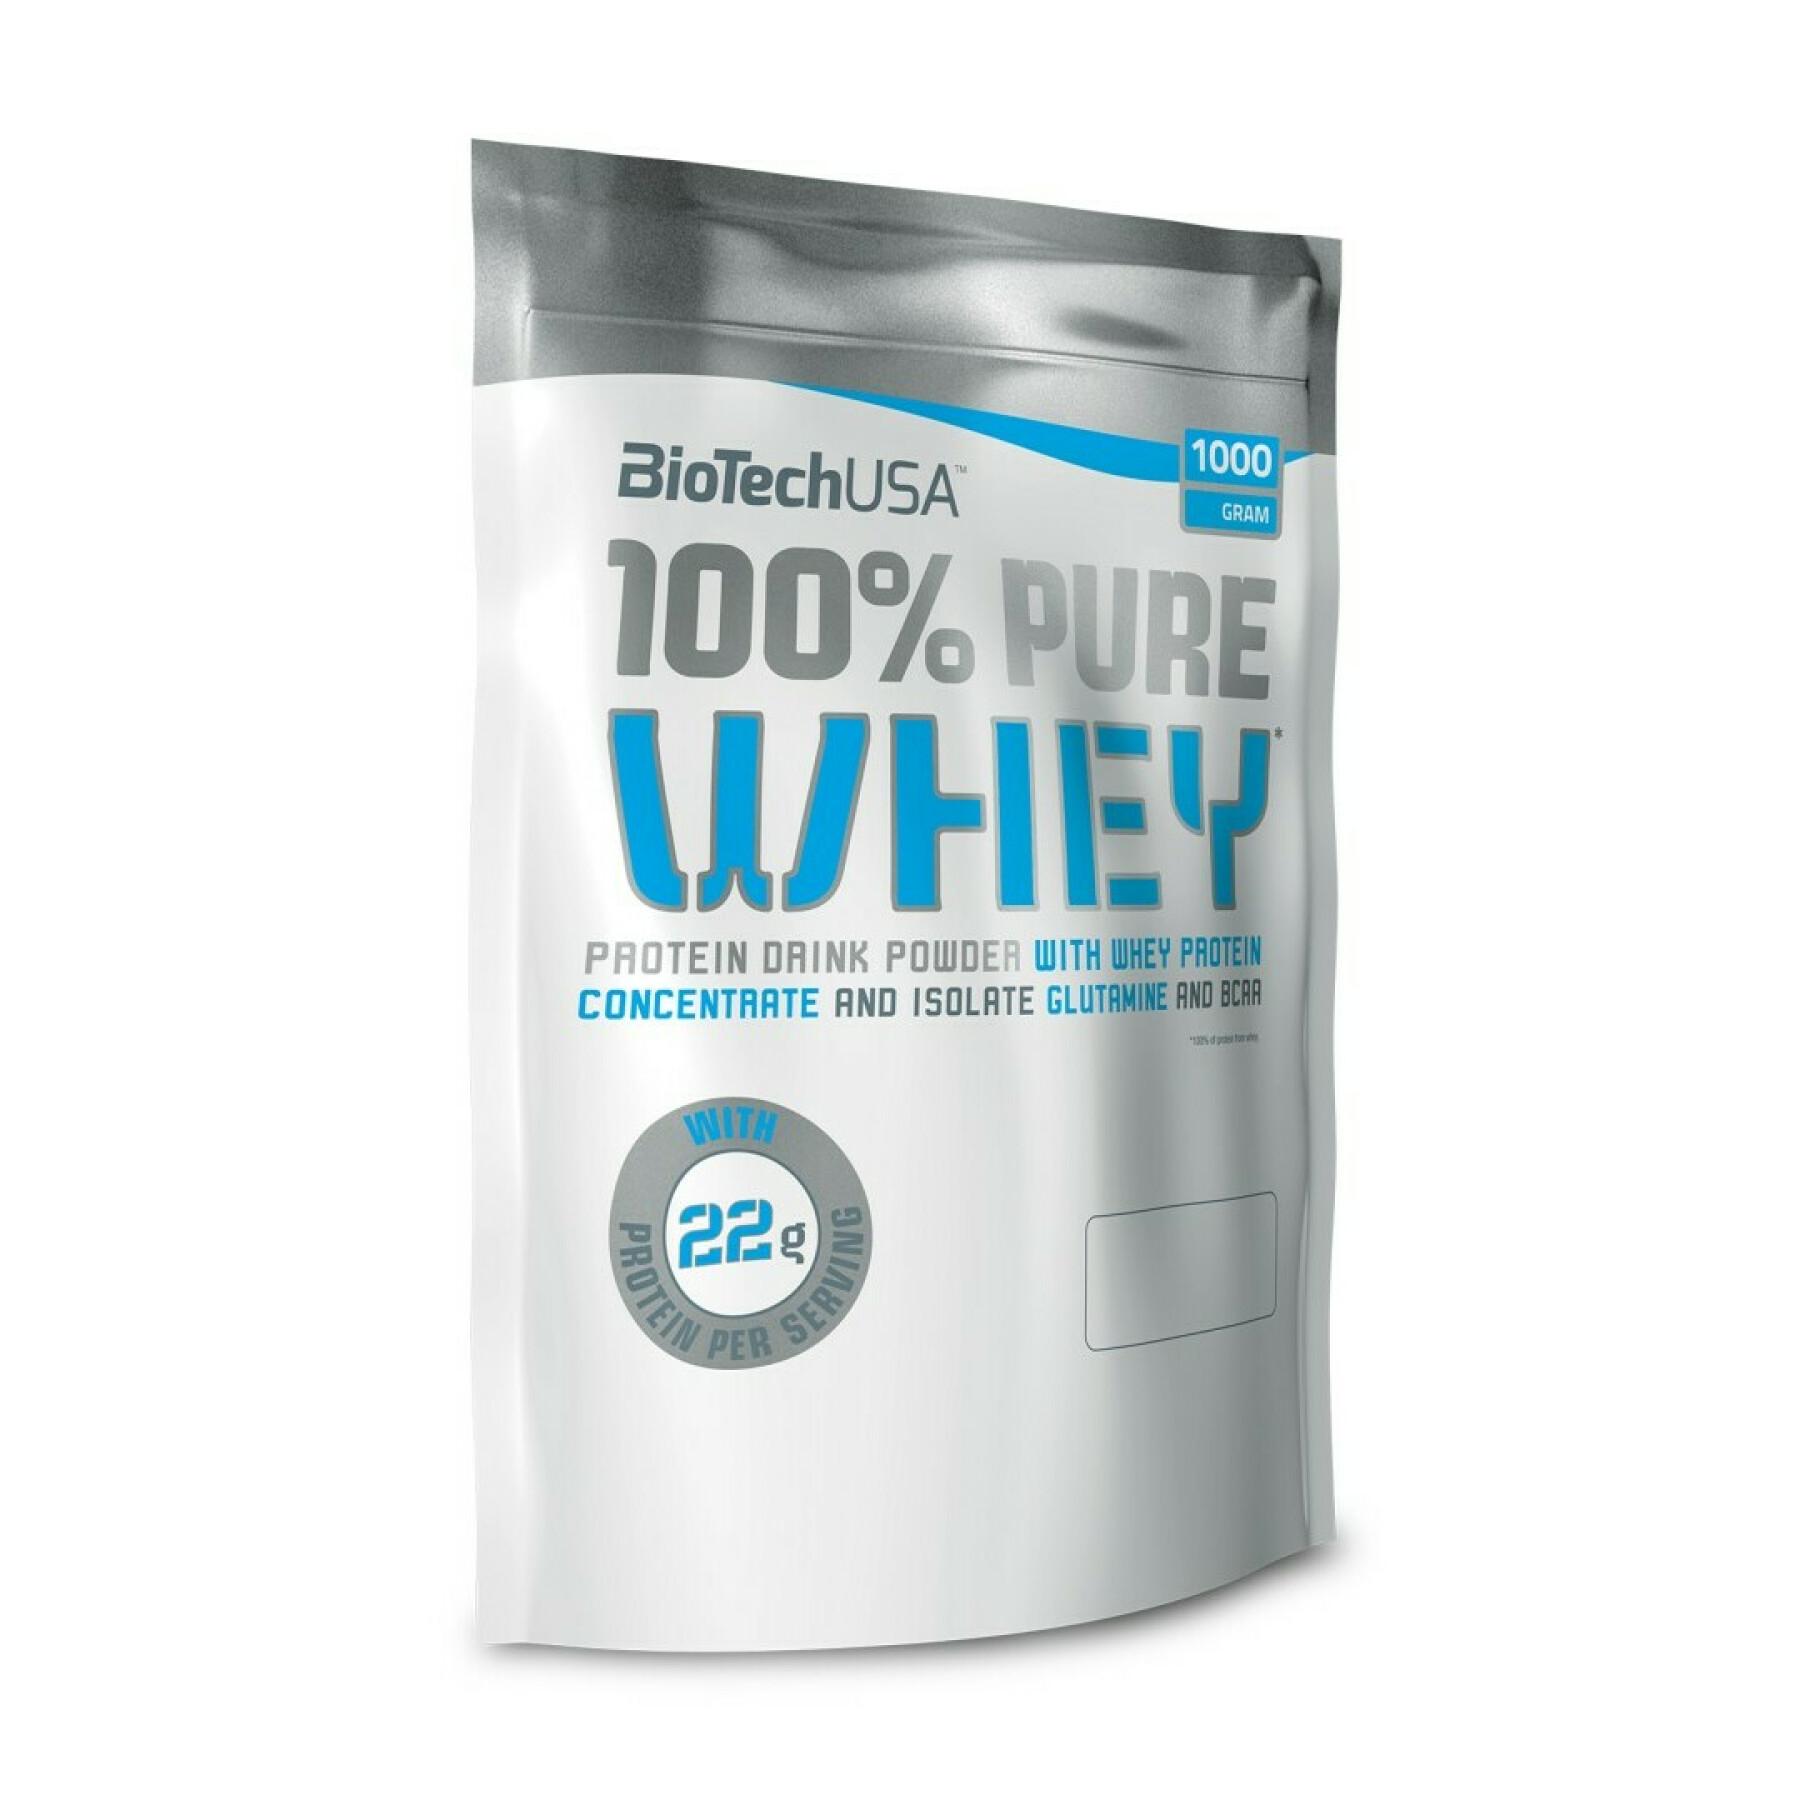 Paquete de 10 bolsas de proteína de suero 100% pura Biotech USA - Neutre - 1kg